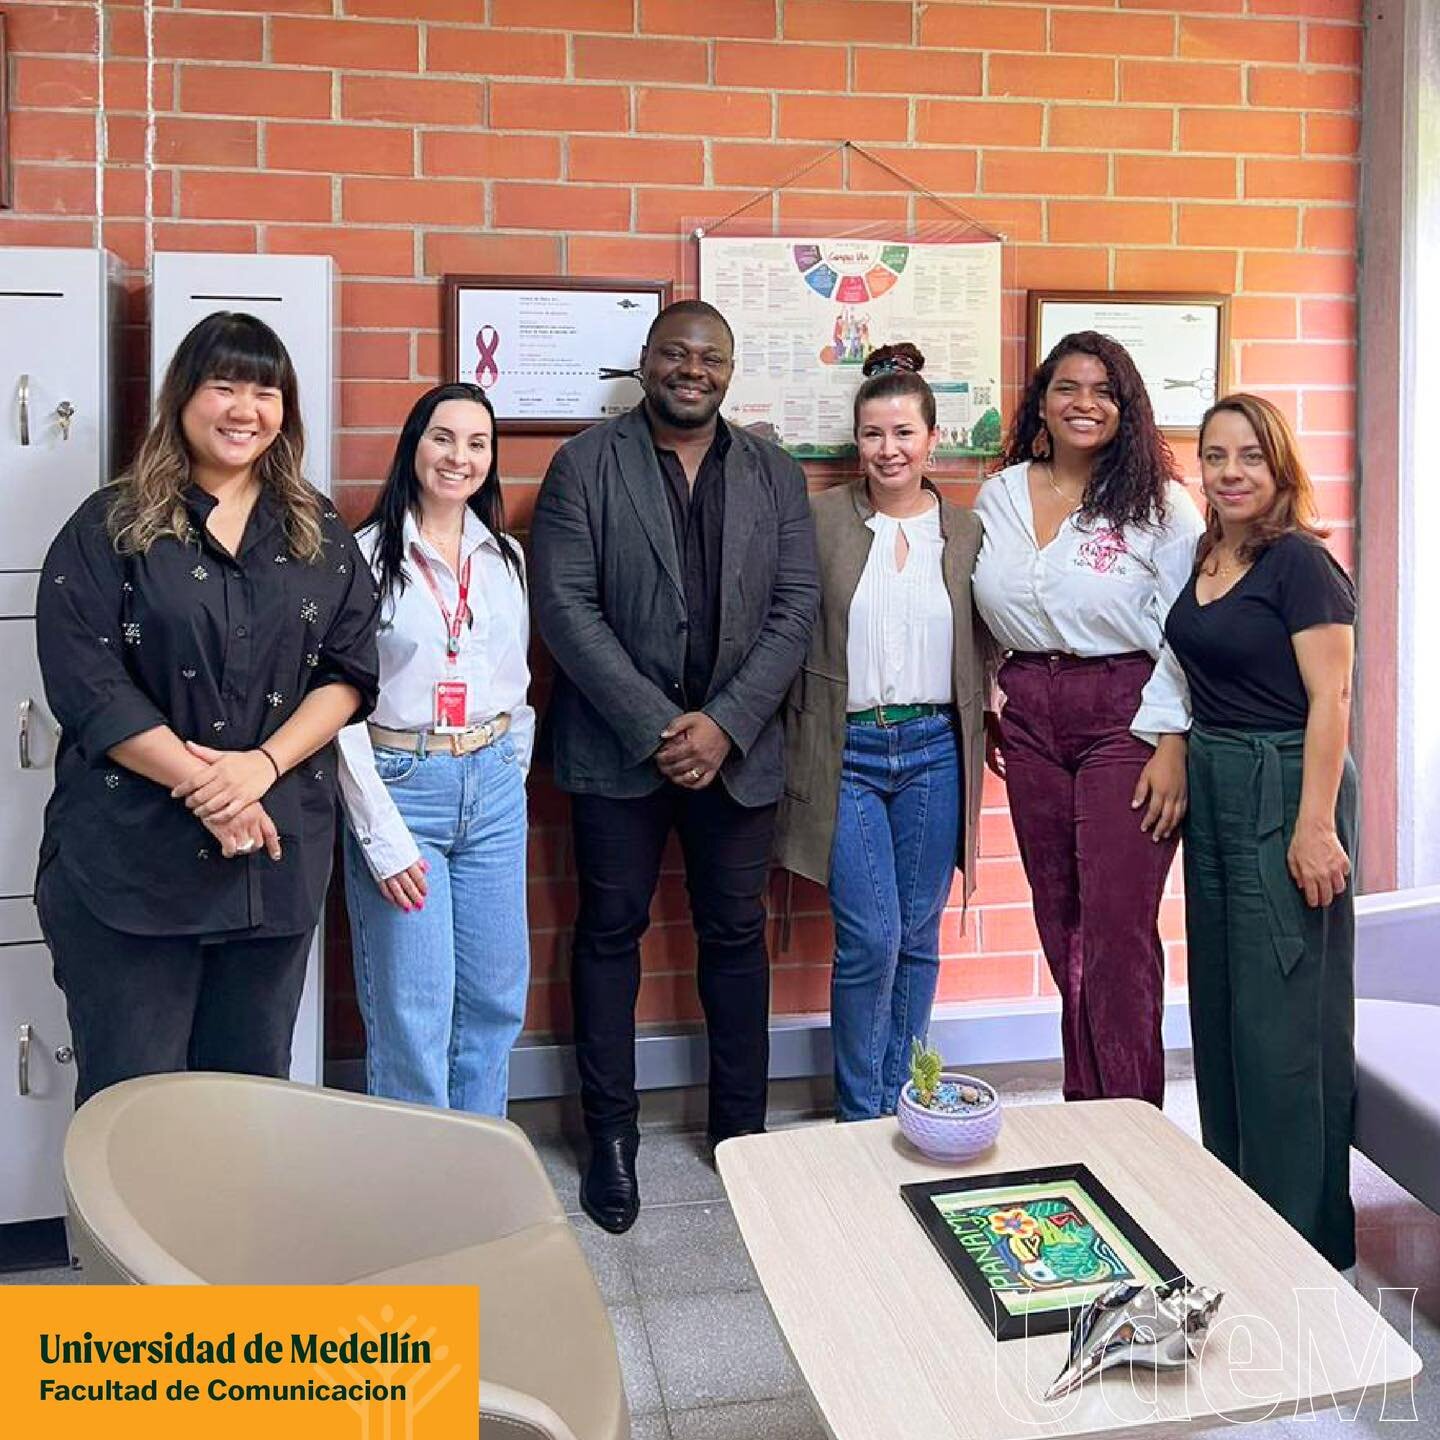 El Poblado MDE visita Universidades locales

La semana pasada, El Poblado MDE tuvo la oportunidad de visitar y conocer a profesores y estudiantes de cuatro universidades locales en Medell&iacute;n, Colombia: @UdeMedellin, @UdeA, @EAFIT y @ITMinstituc